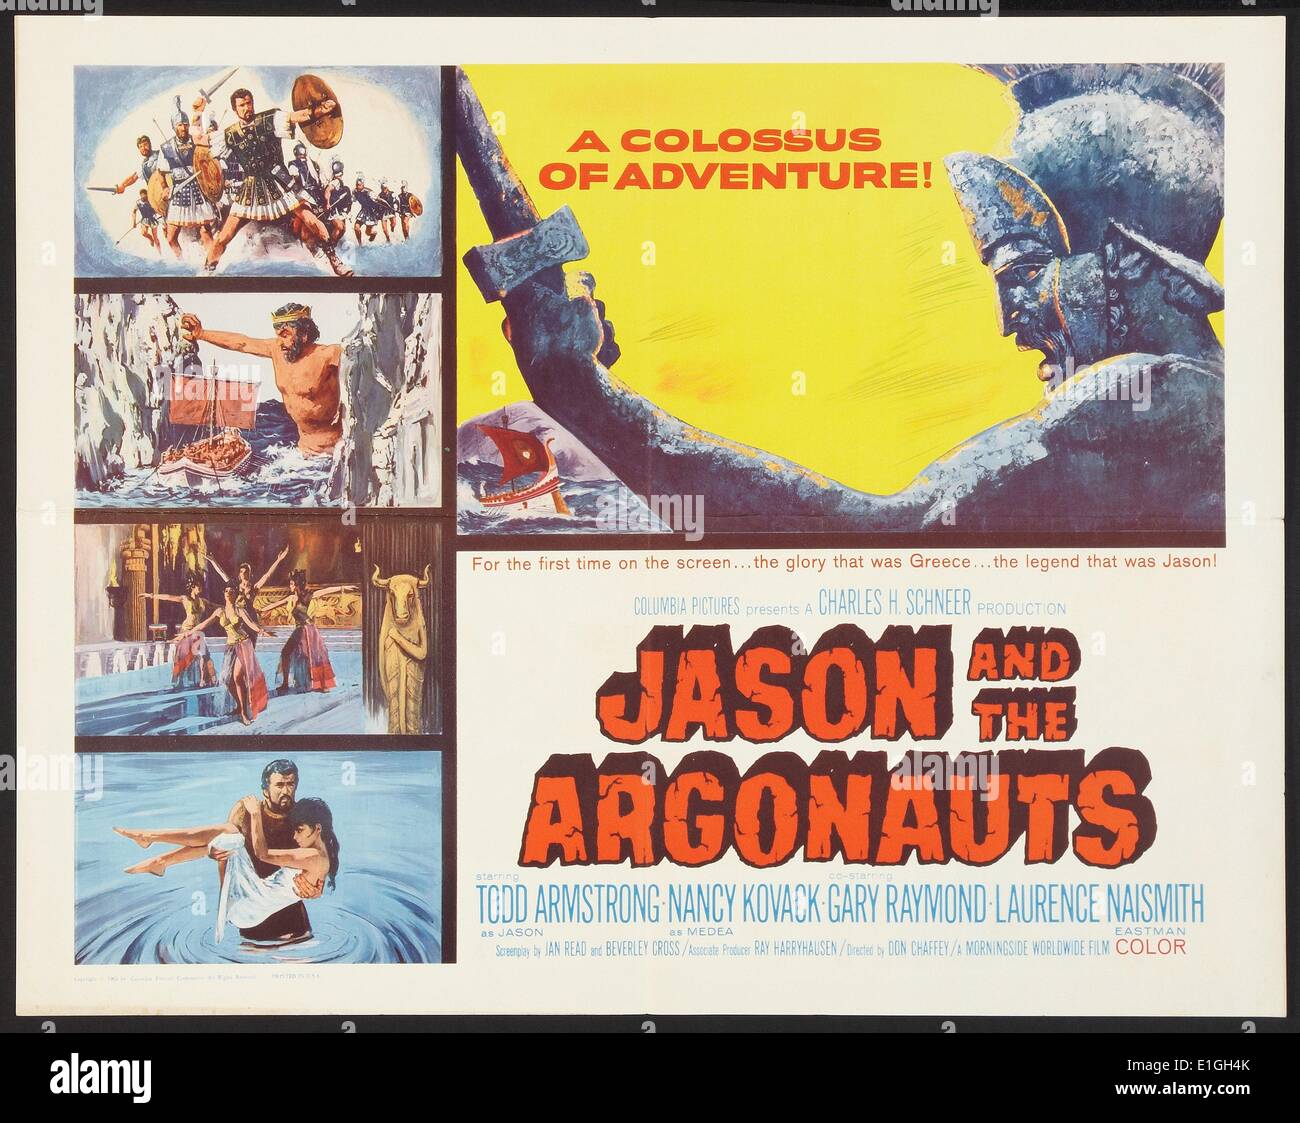 Jason et les Argonautes 1963 un film avec Todd Armstrong. Banque D'Images